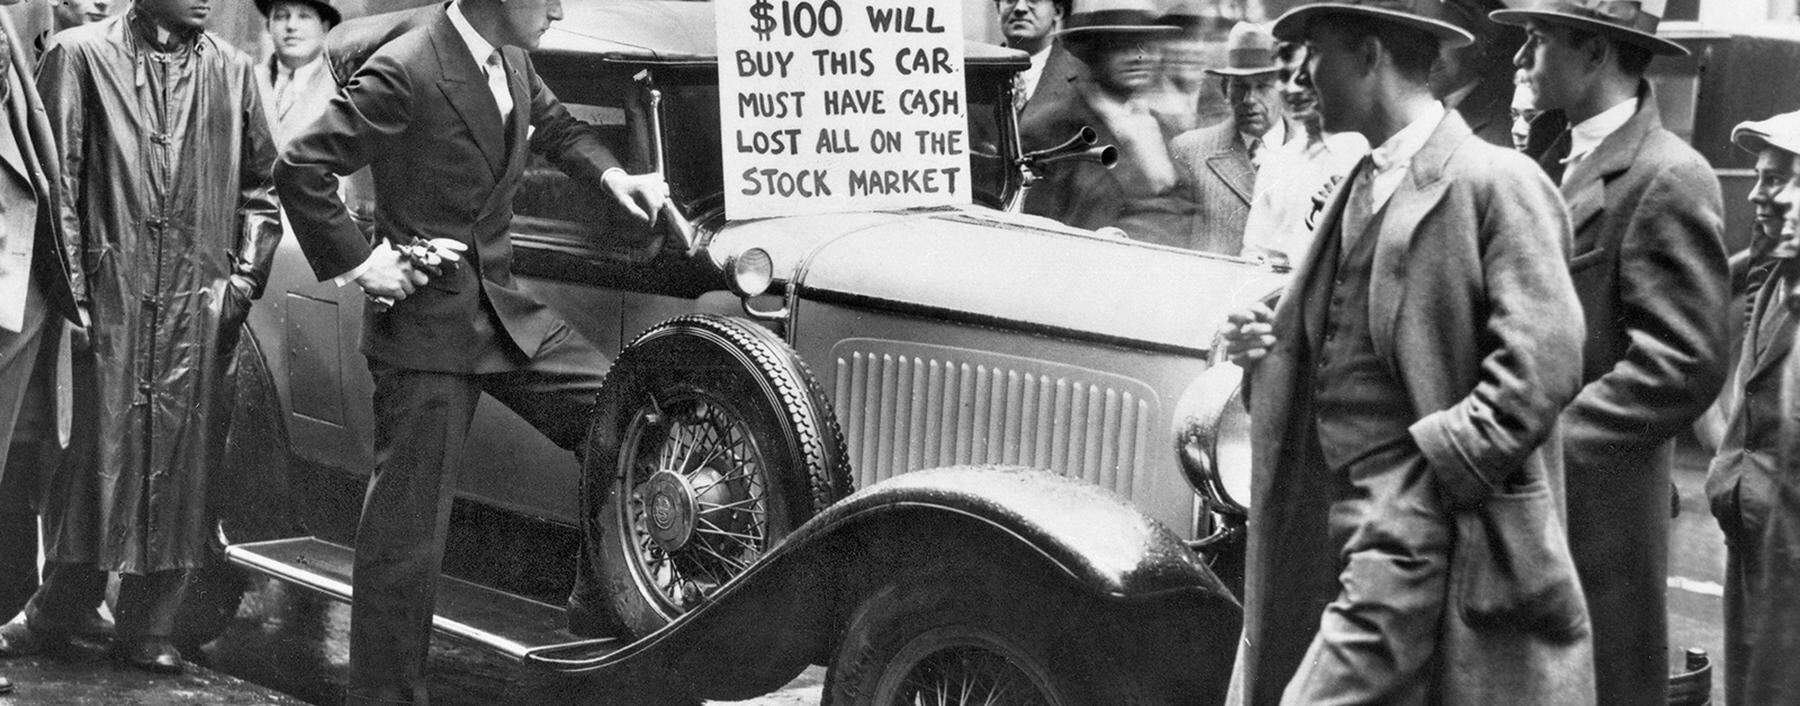 1929 war die Party vorüber. In den „Roaring Twenties“ hatten sich viele Menschen hoch verschuldet, um Autos und Aktien zu kaufen.